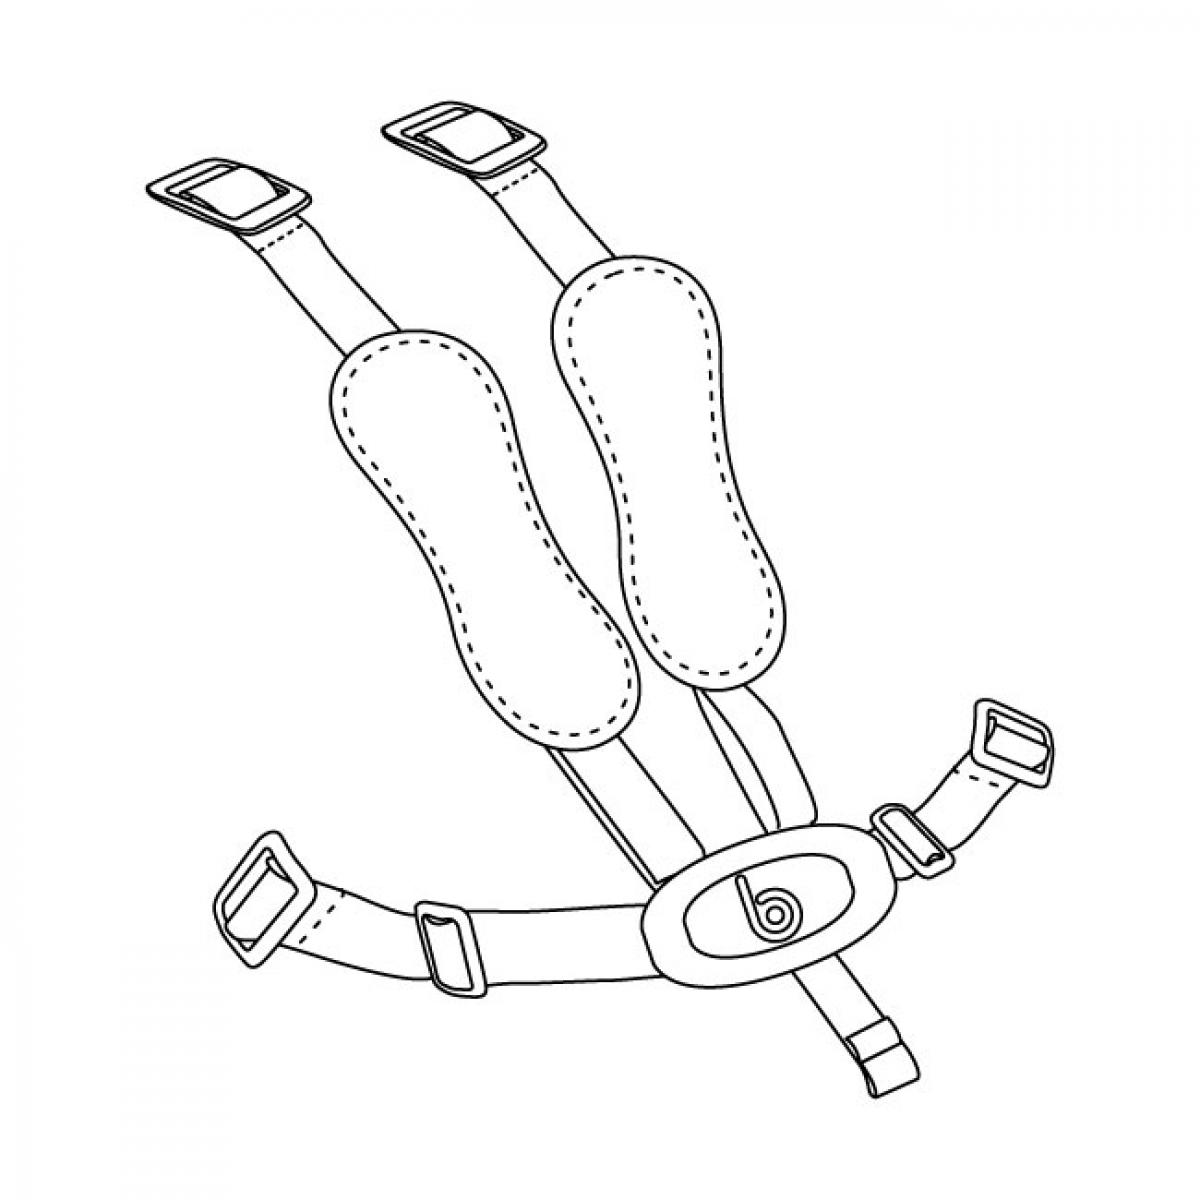 Ремни безопасности для стульчика для кормления своими руками